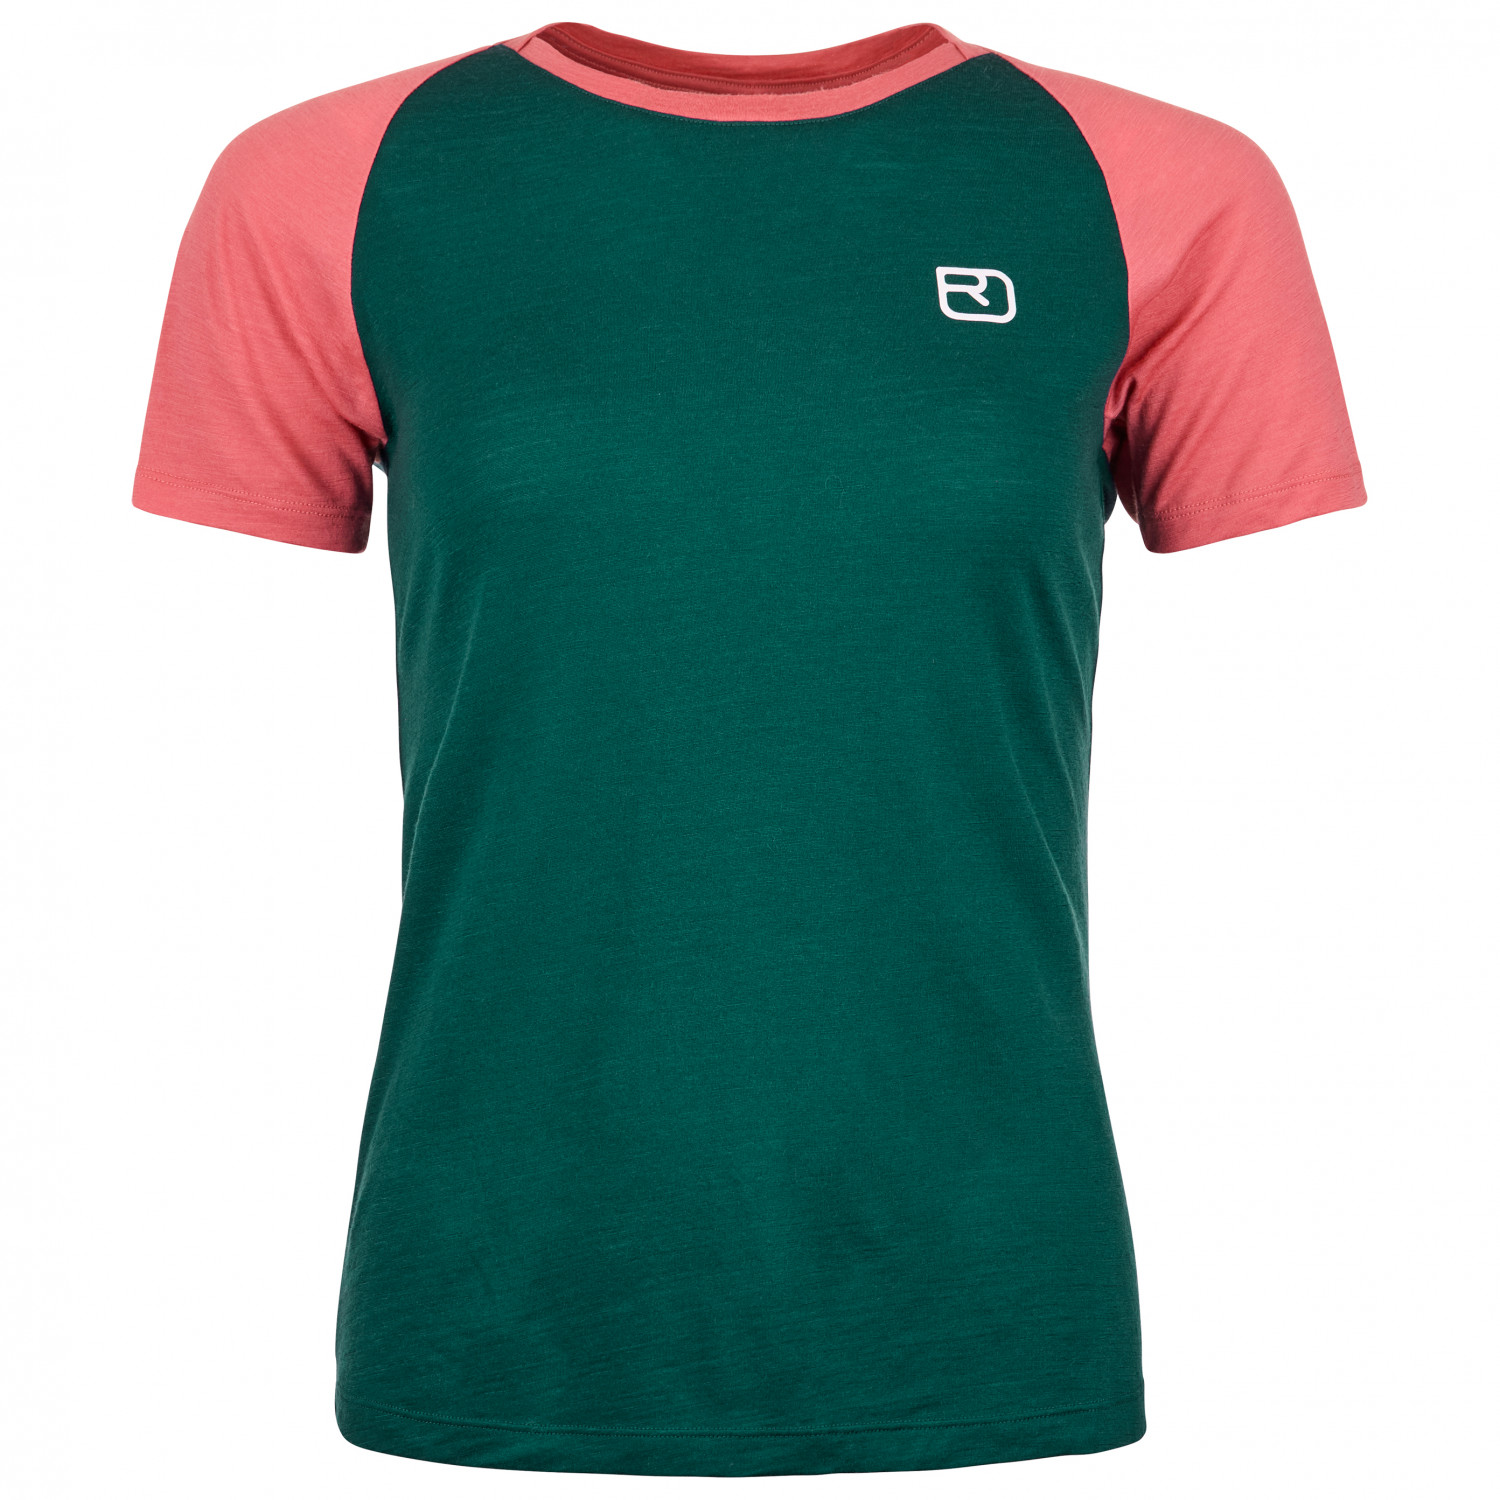 Рубашка из мериноса Ortovox Women's 120 Tec Fast Mountain T Shirt, цвет Dark Pacific